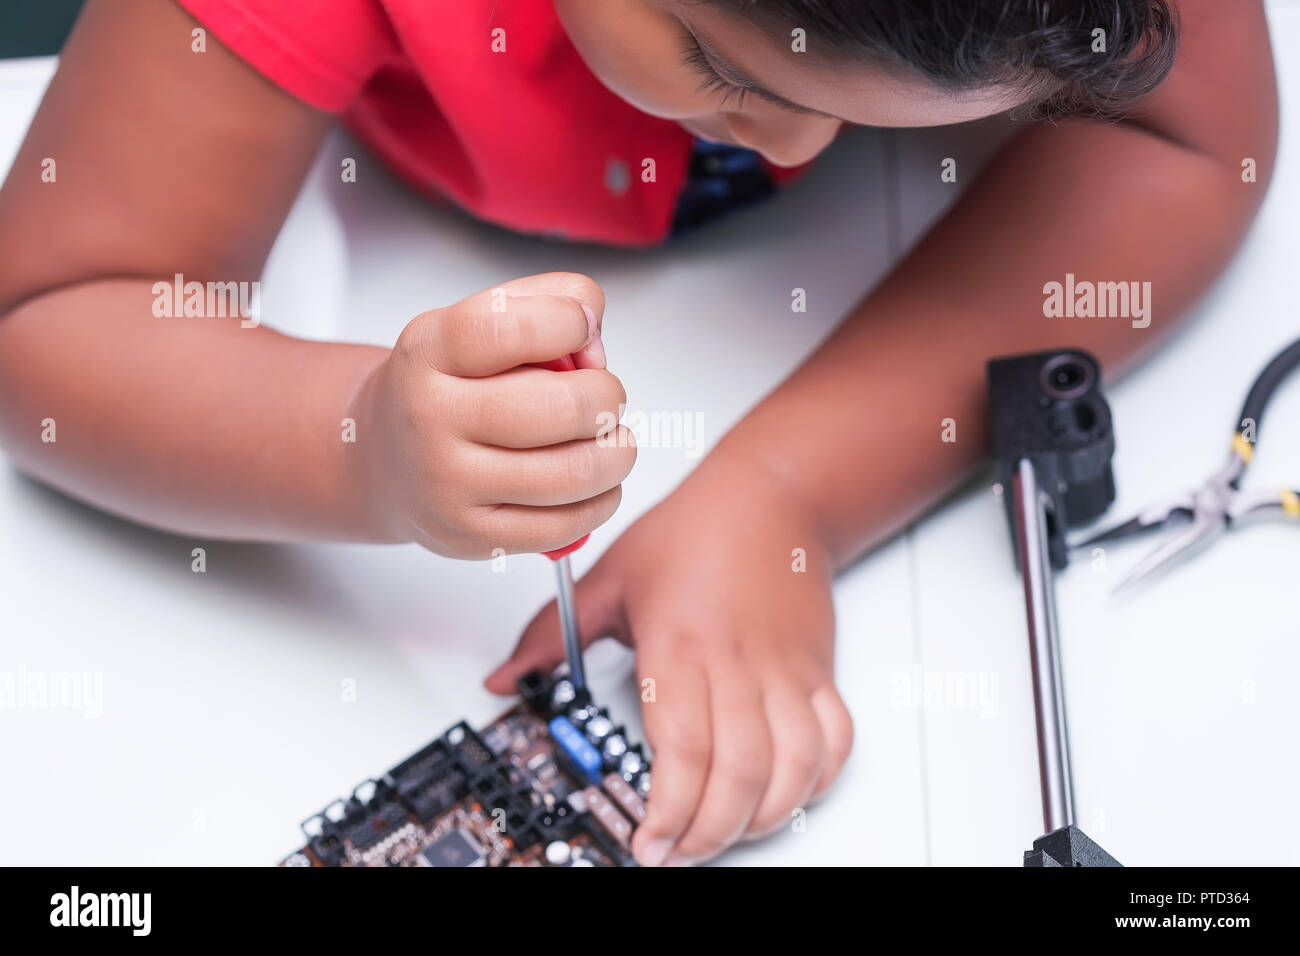 L'apprentissage du jeune enfant sur l'électronique et de la technologie par le câblage et la vis de maintien conducteur établissant une connexion en classe Banque D'Images